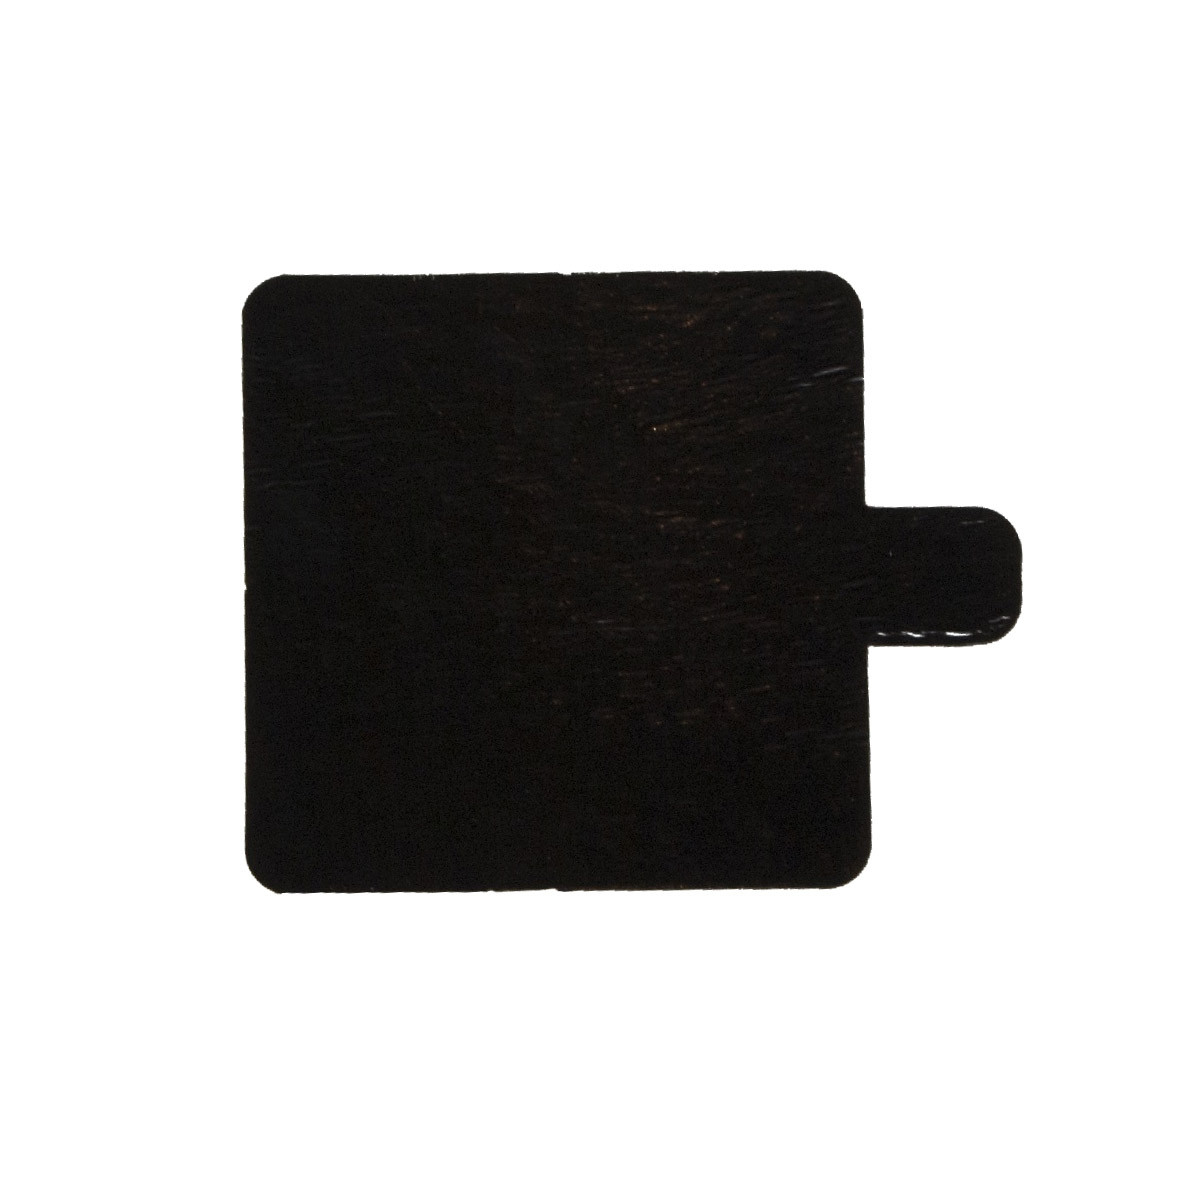 Taartkarton Vierkant Goud/Zwart met lip 6x6cm per stuk